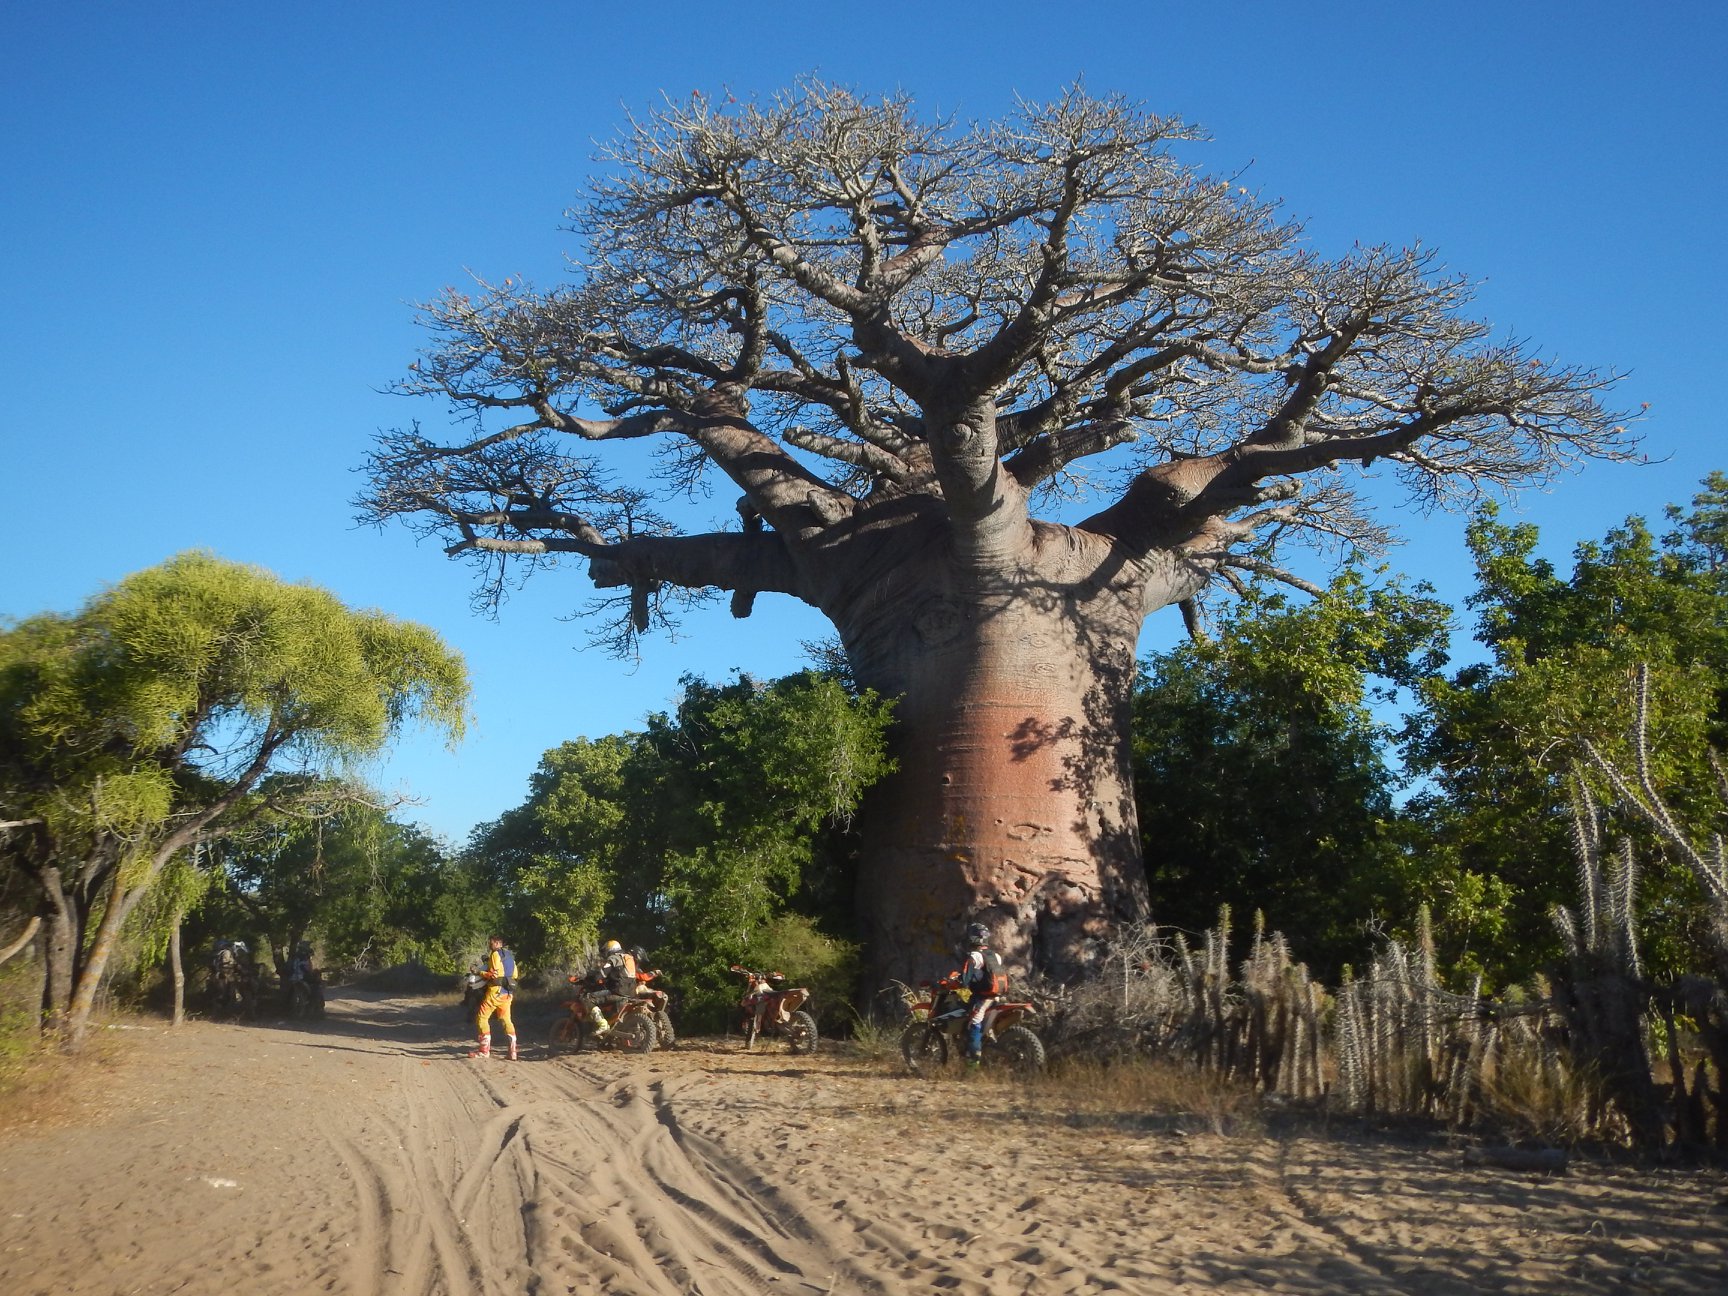 Une pause prés de grand baobab sur la route de terre et de sable